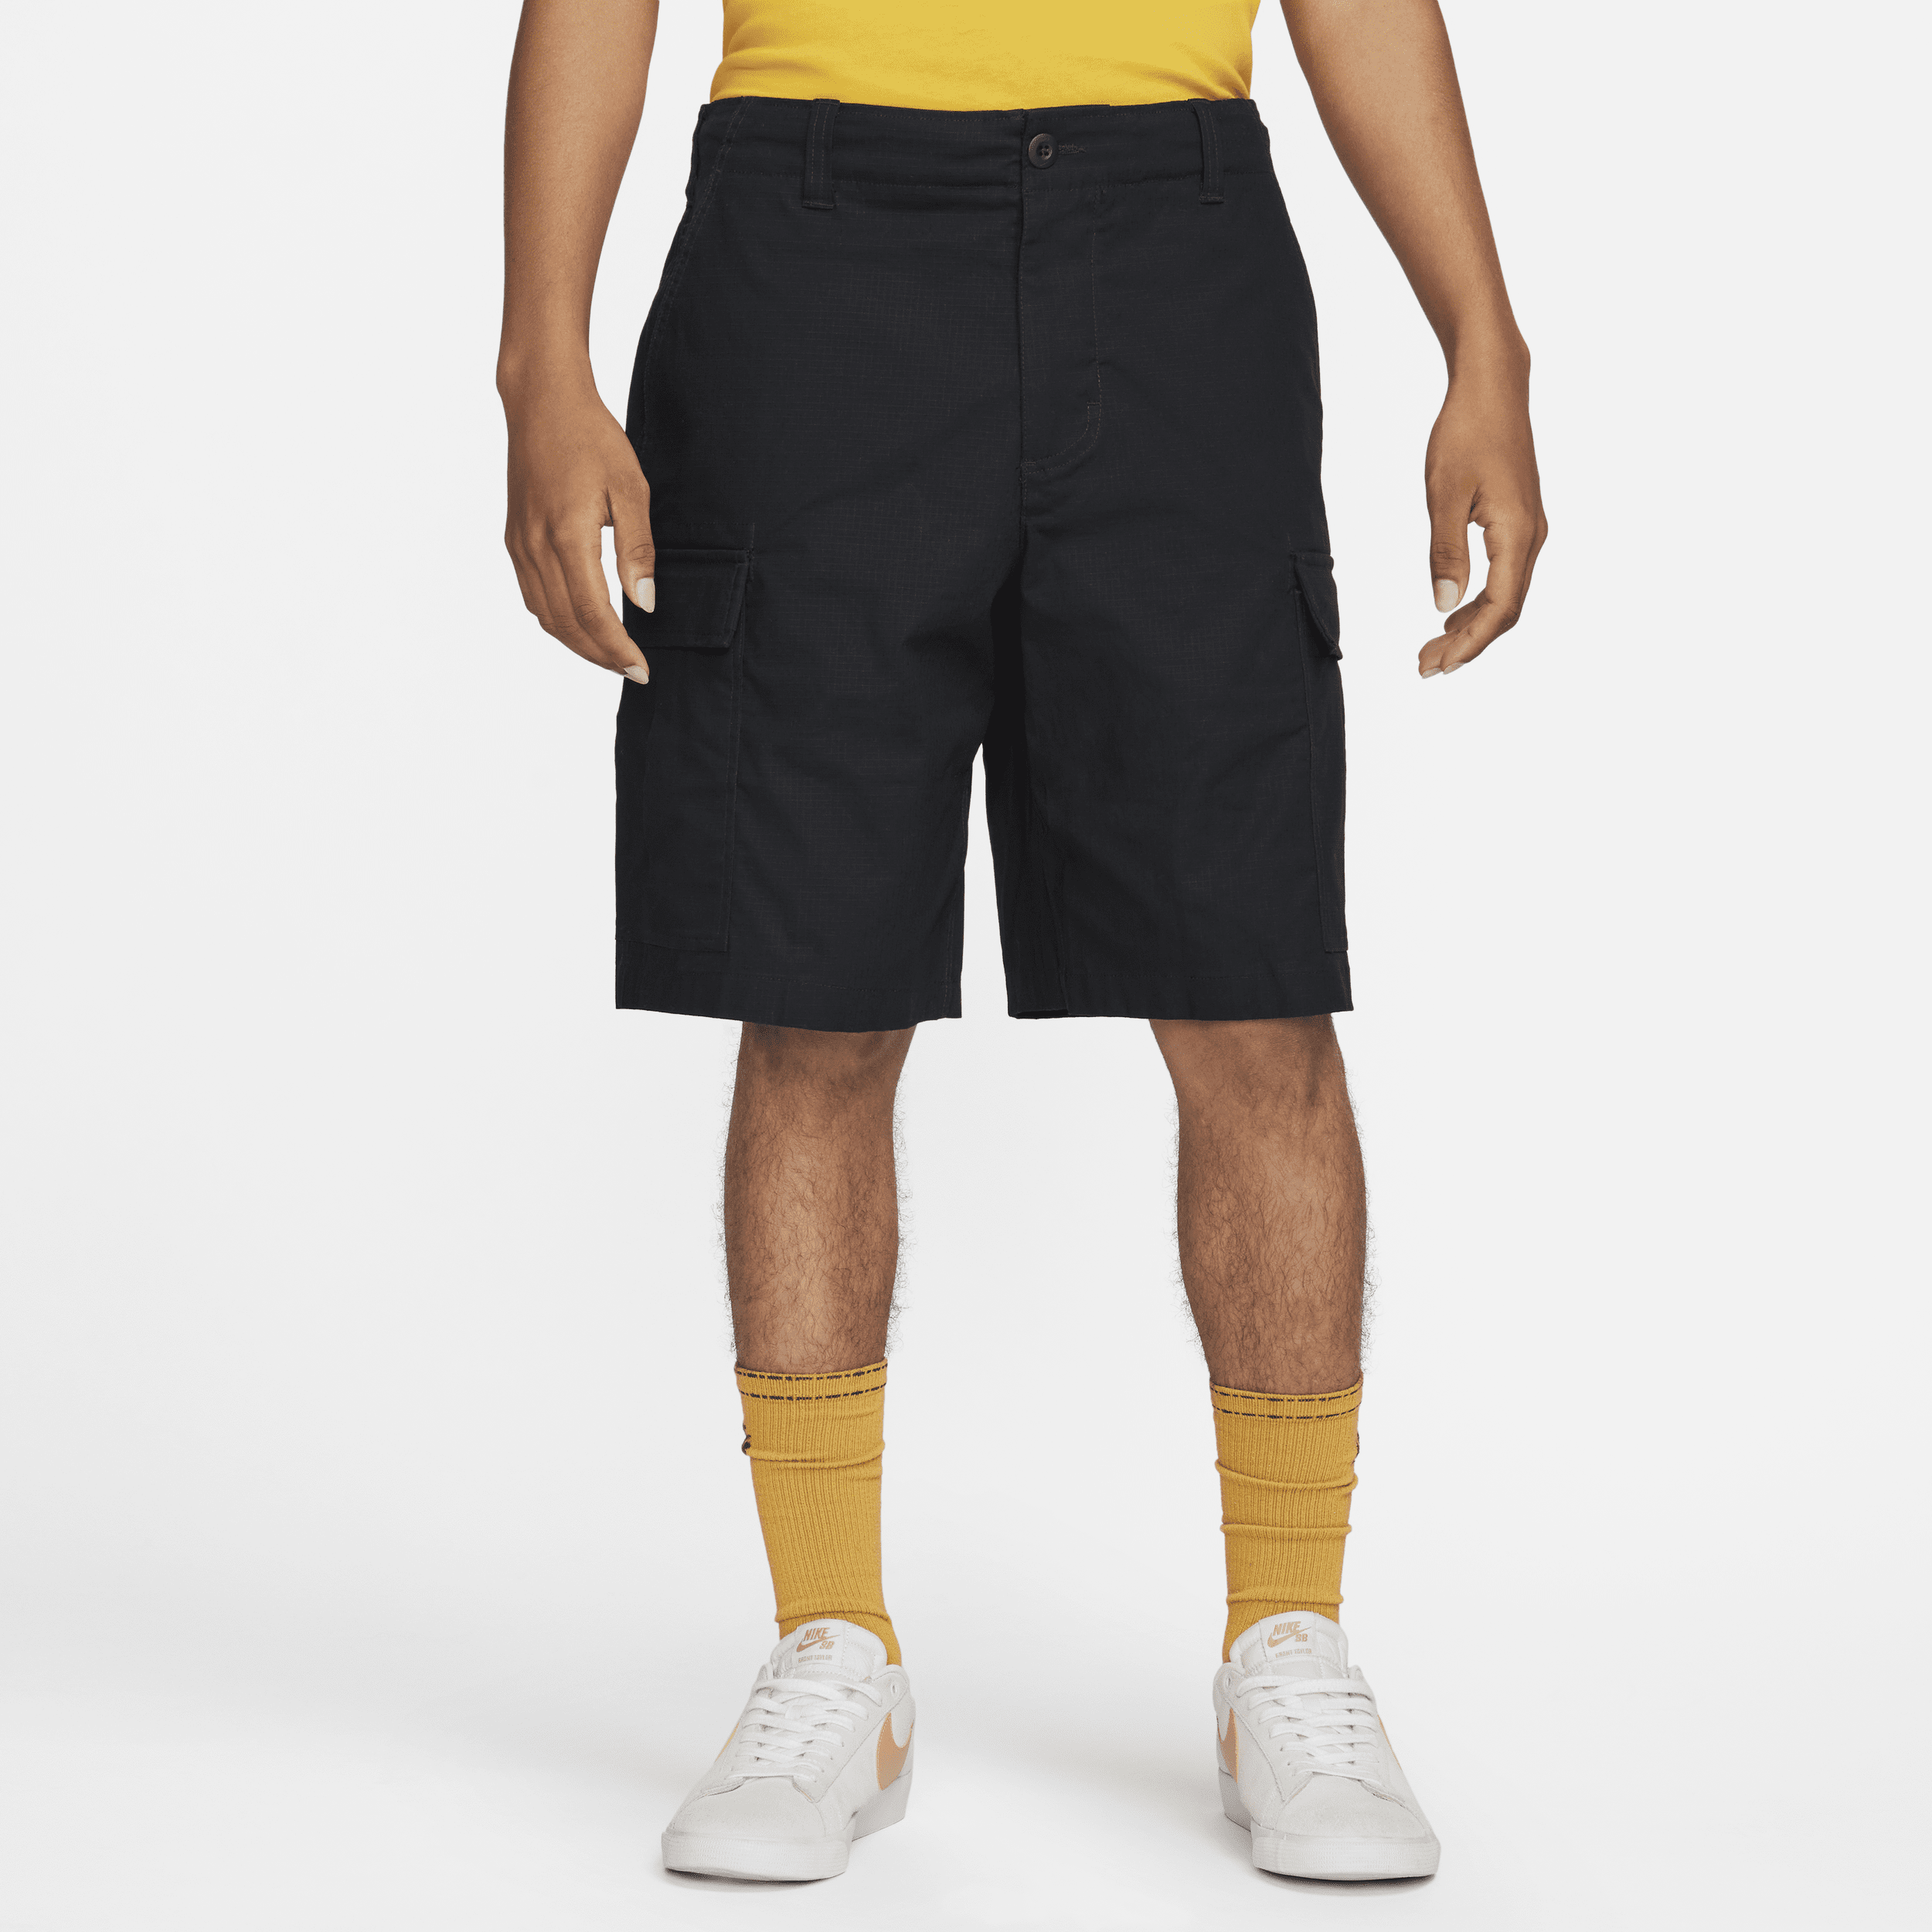 Nike SB Kearny Pantalón corto cargo de skateboard - Hombre - Negro